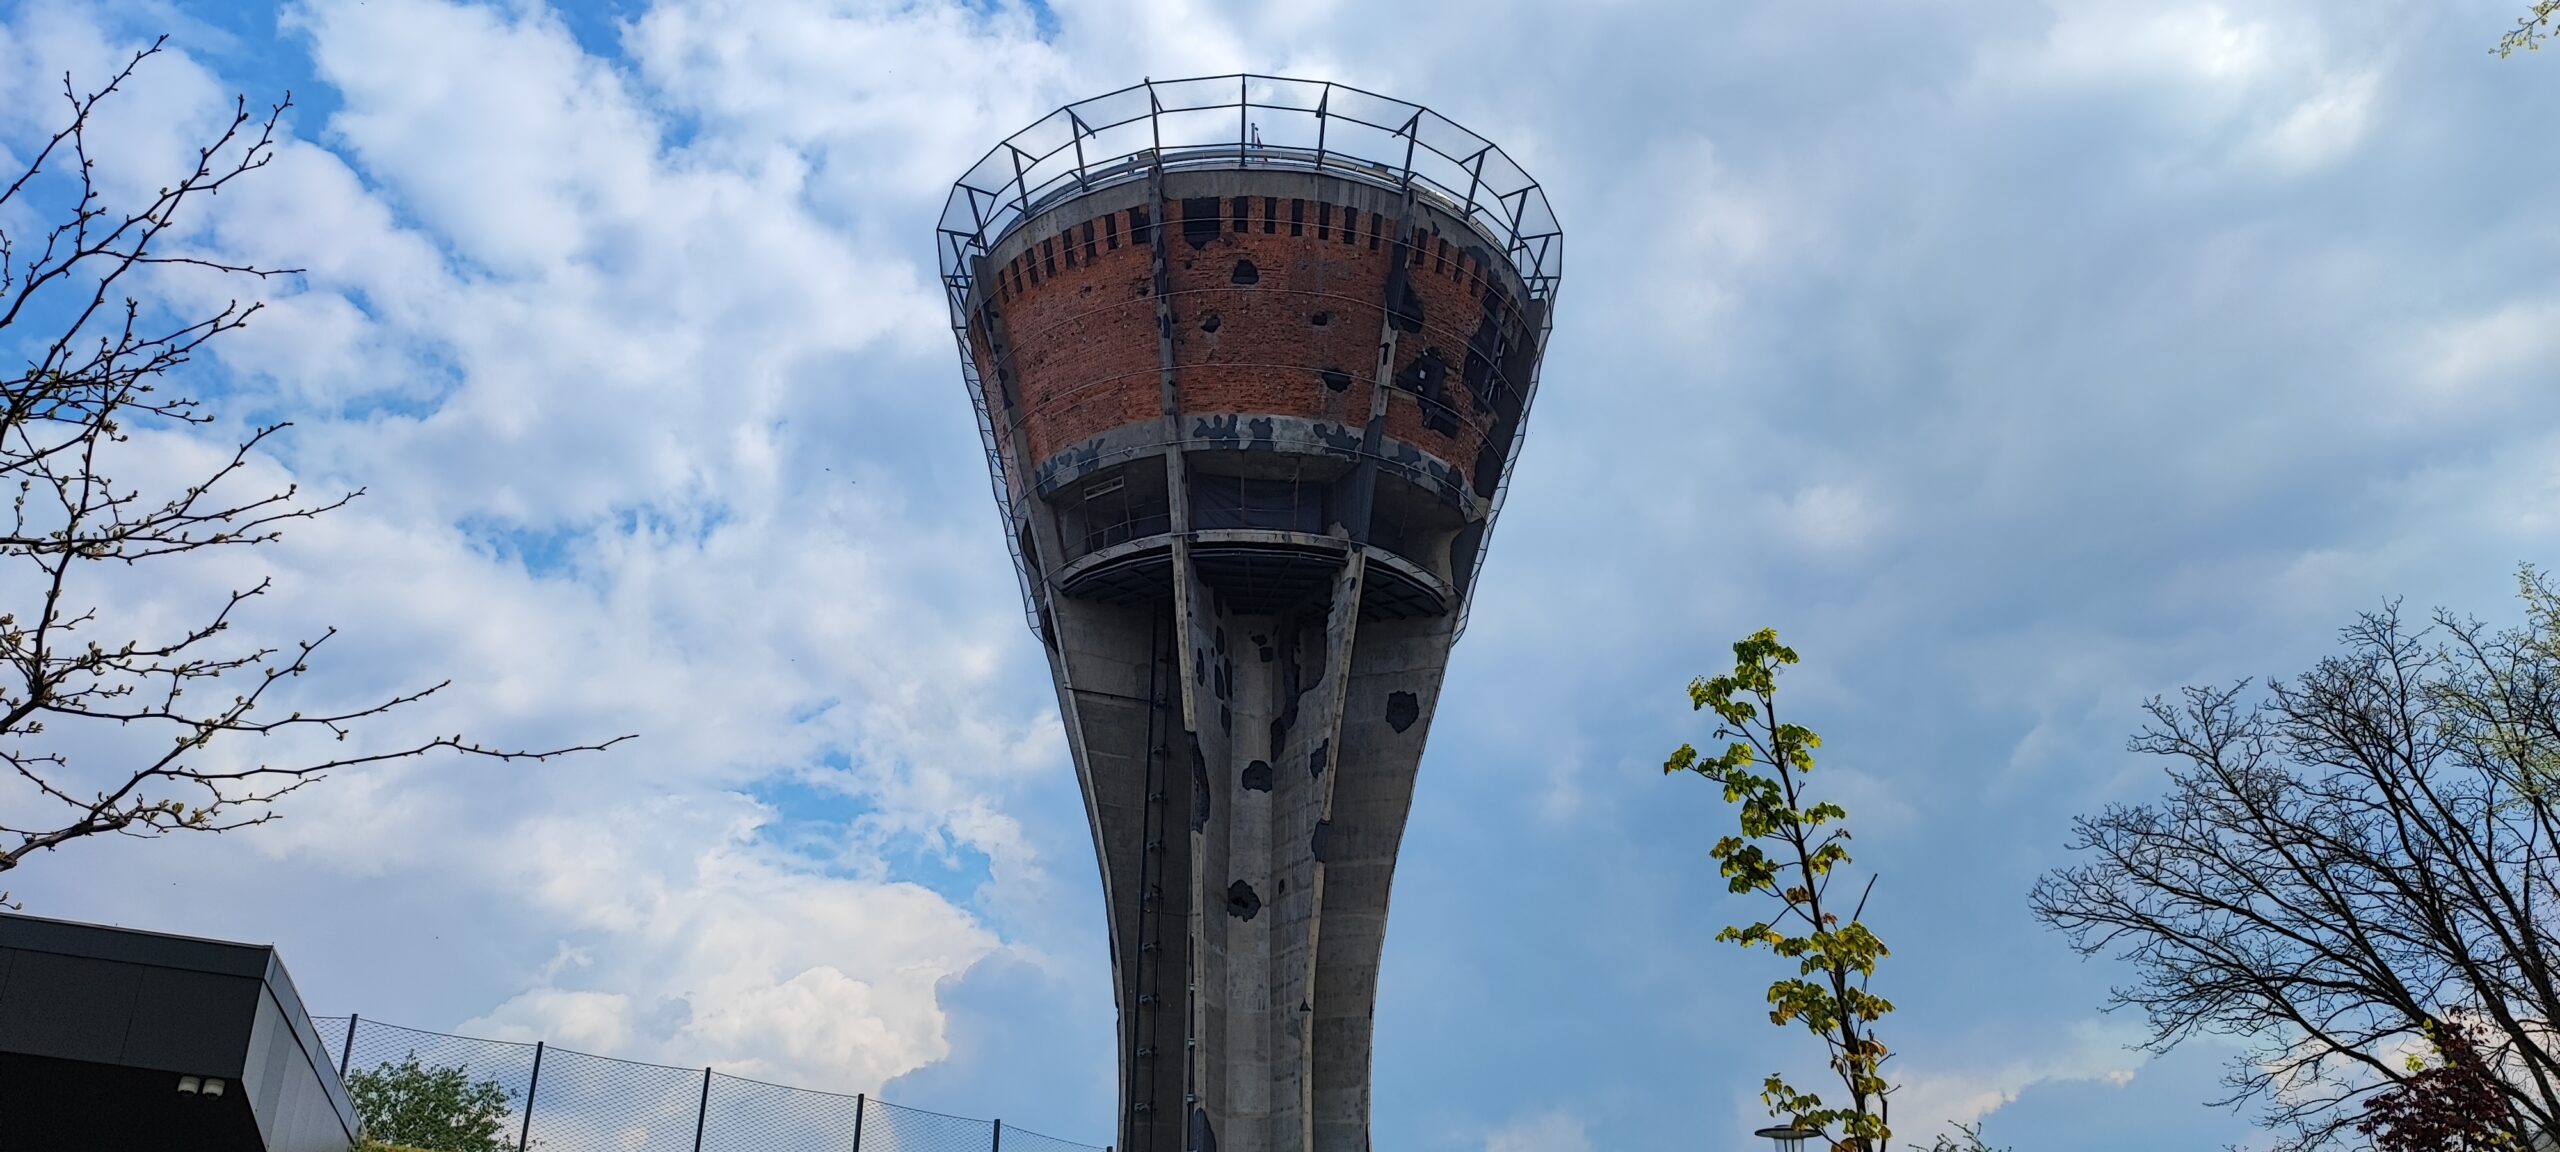 Vukovar: hořká připomínka války v devadesátých letech